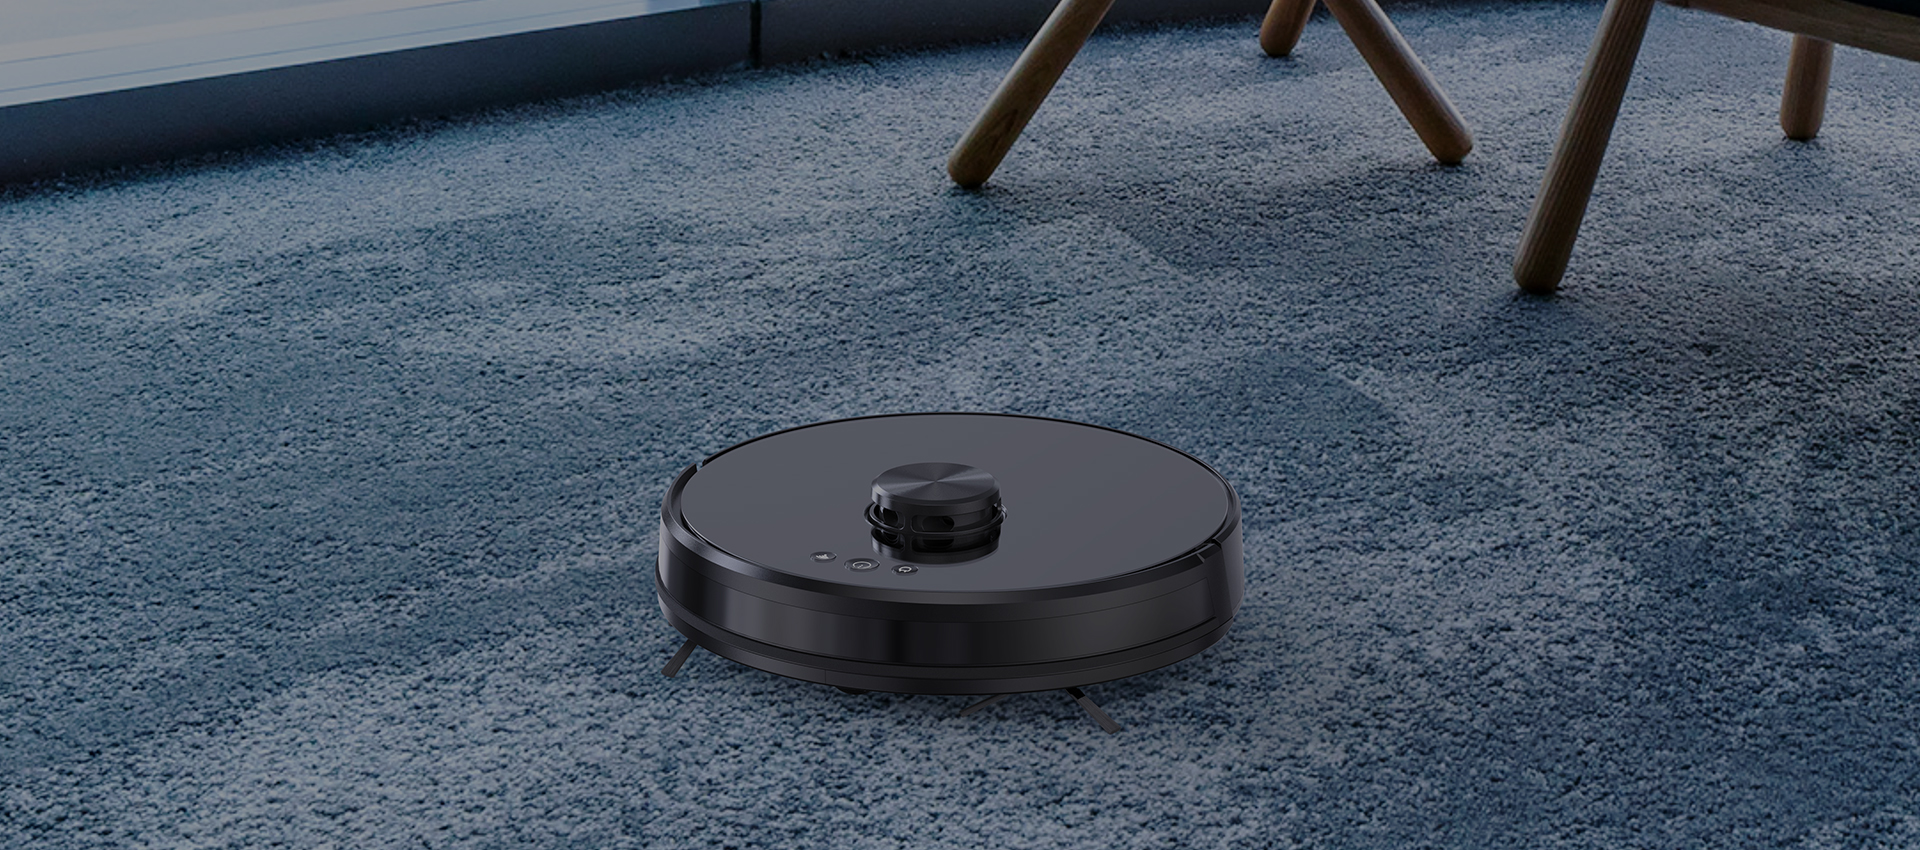 Robot Vacuum Cleaner For Carpet